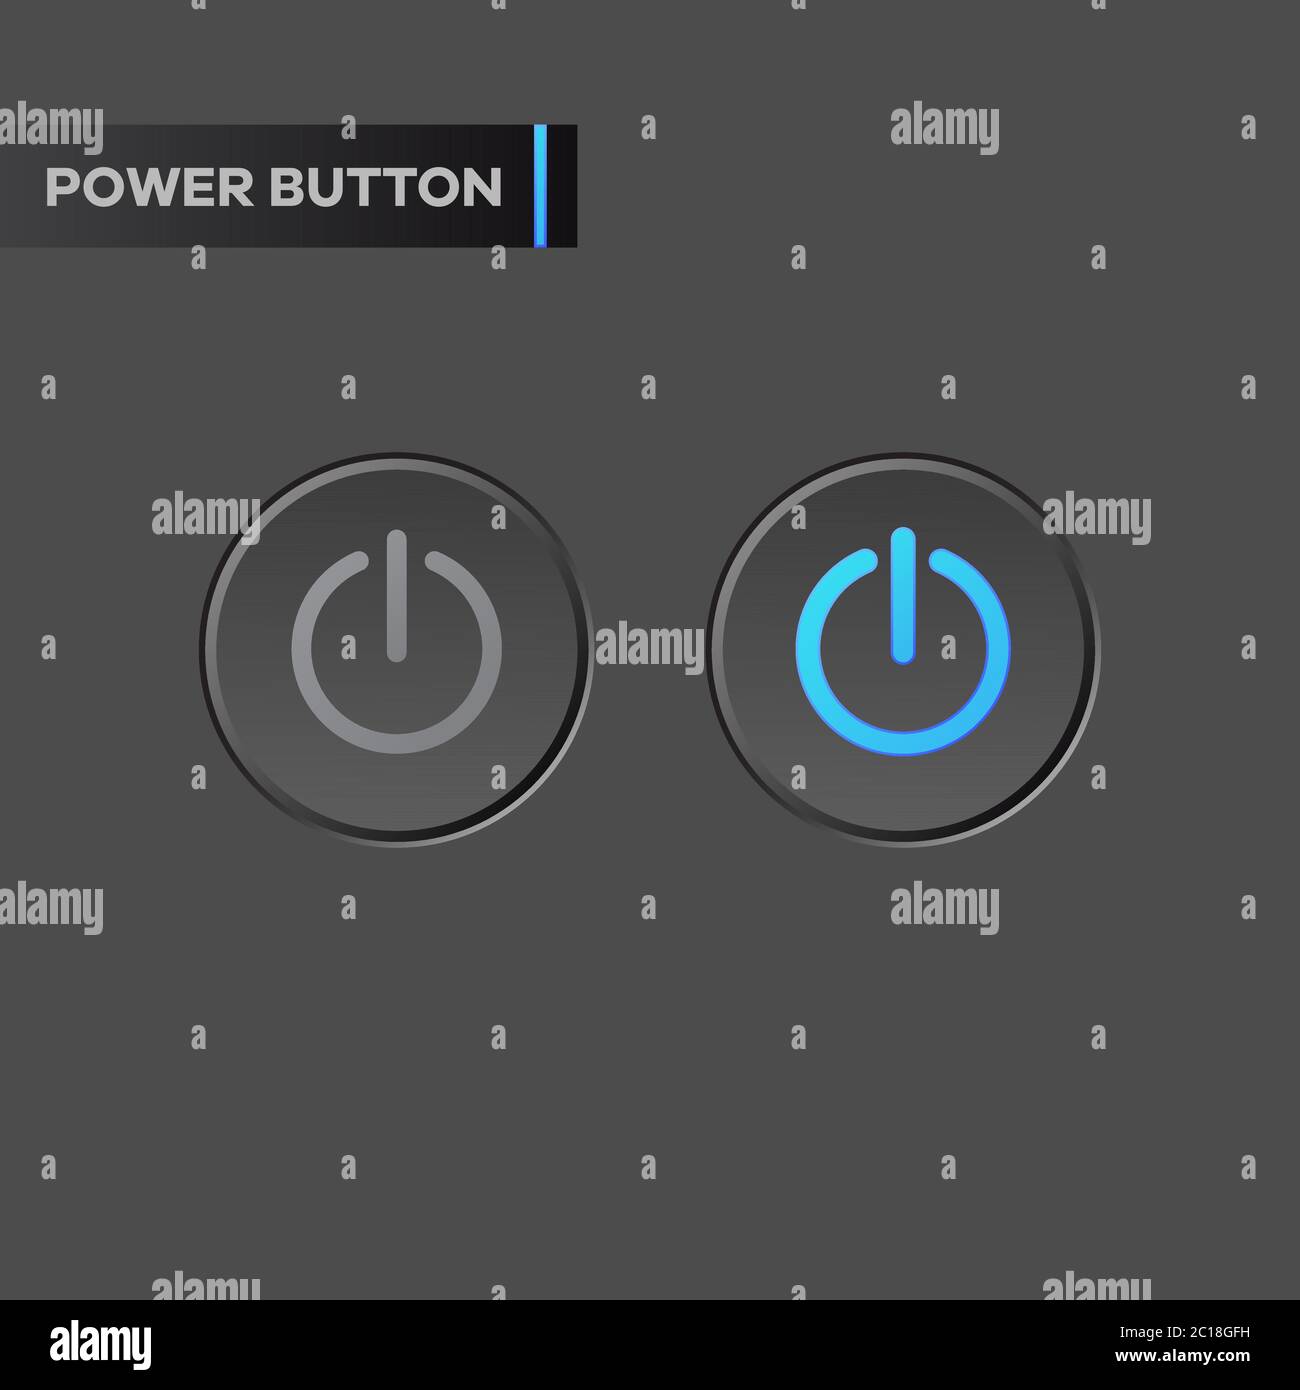 L'icona del pulsante di accensione con effetto al neon blu illumina la retroilluminazione. Pulsante di accensione e spegnimento con indicatore luminoso per le applicazioni del computer con tema scuro Illustrazione Vettoriale